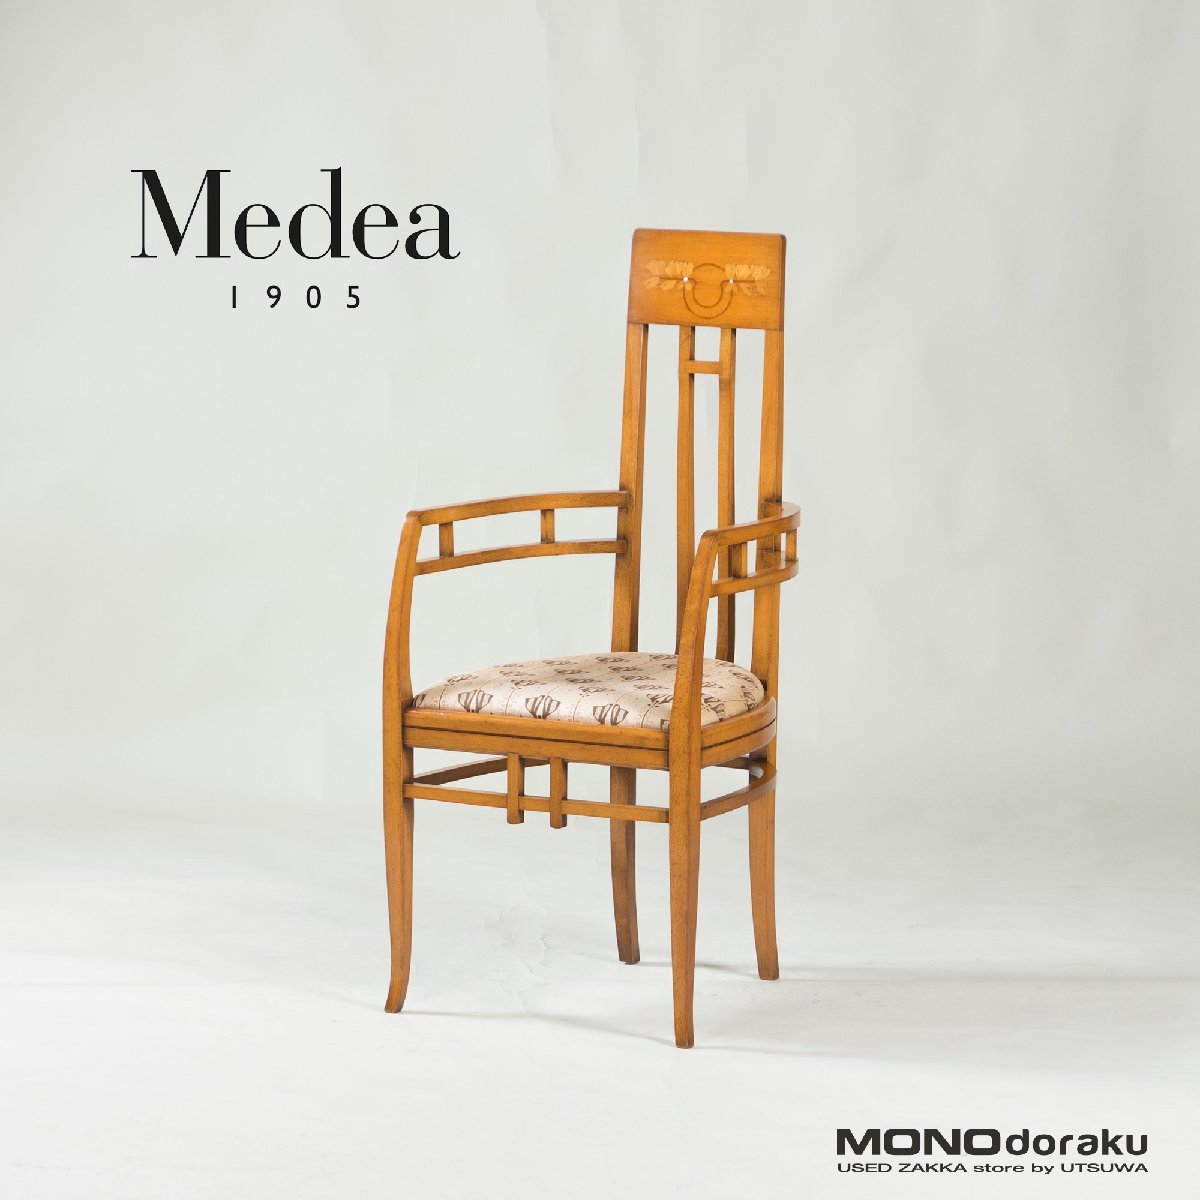 イタリア製 ダイニングチェア Medea メデア アームチェア アールヌーヴォー様式 象嵌 クラシック エレガント アンティーク調